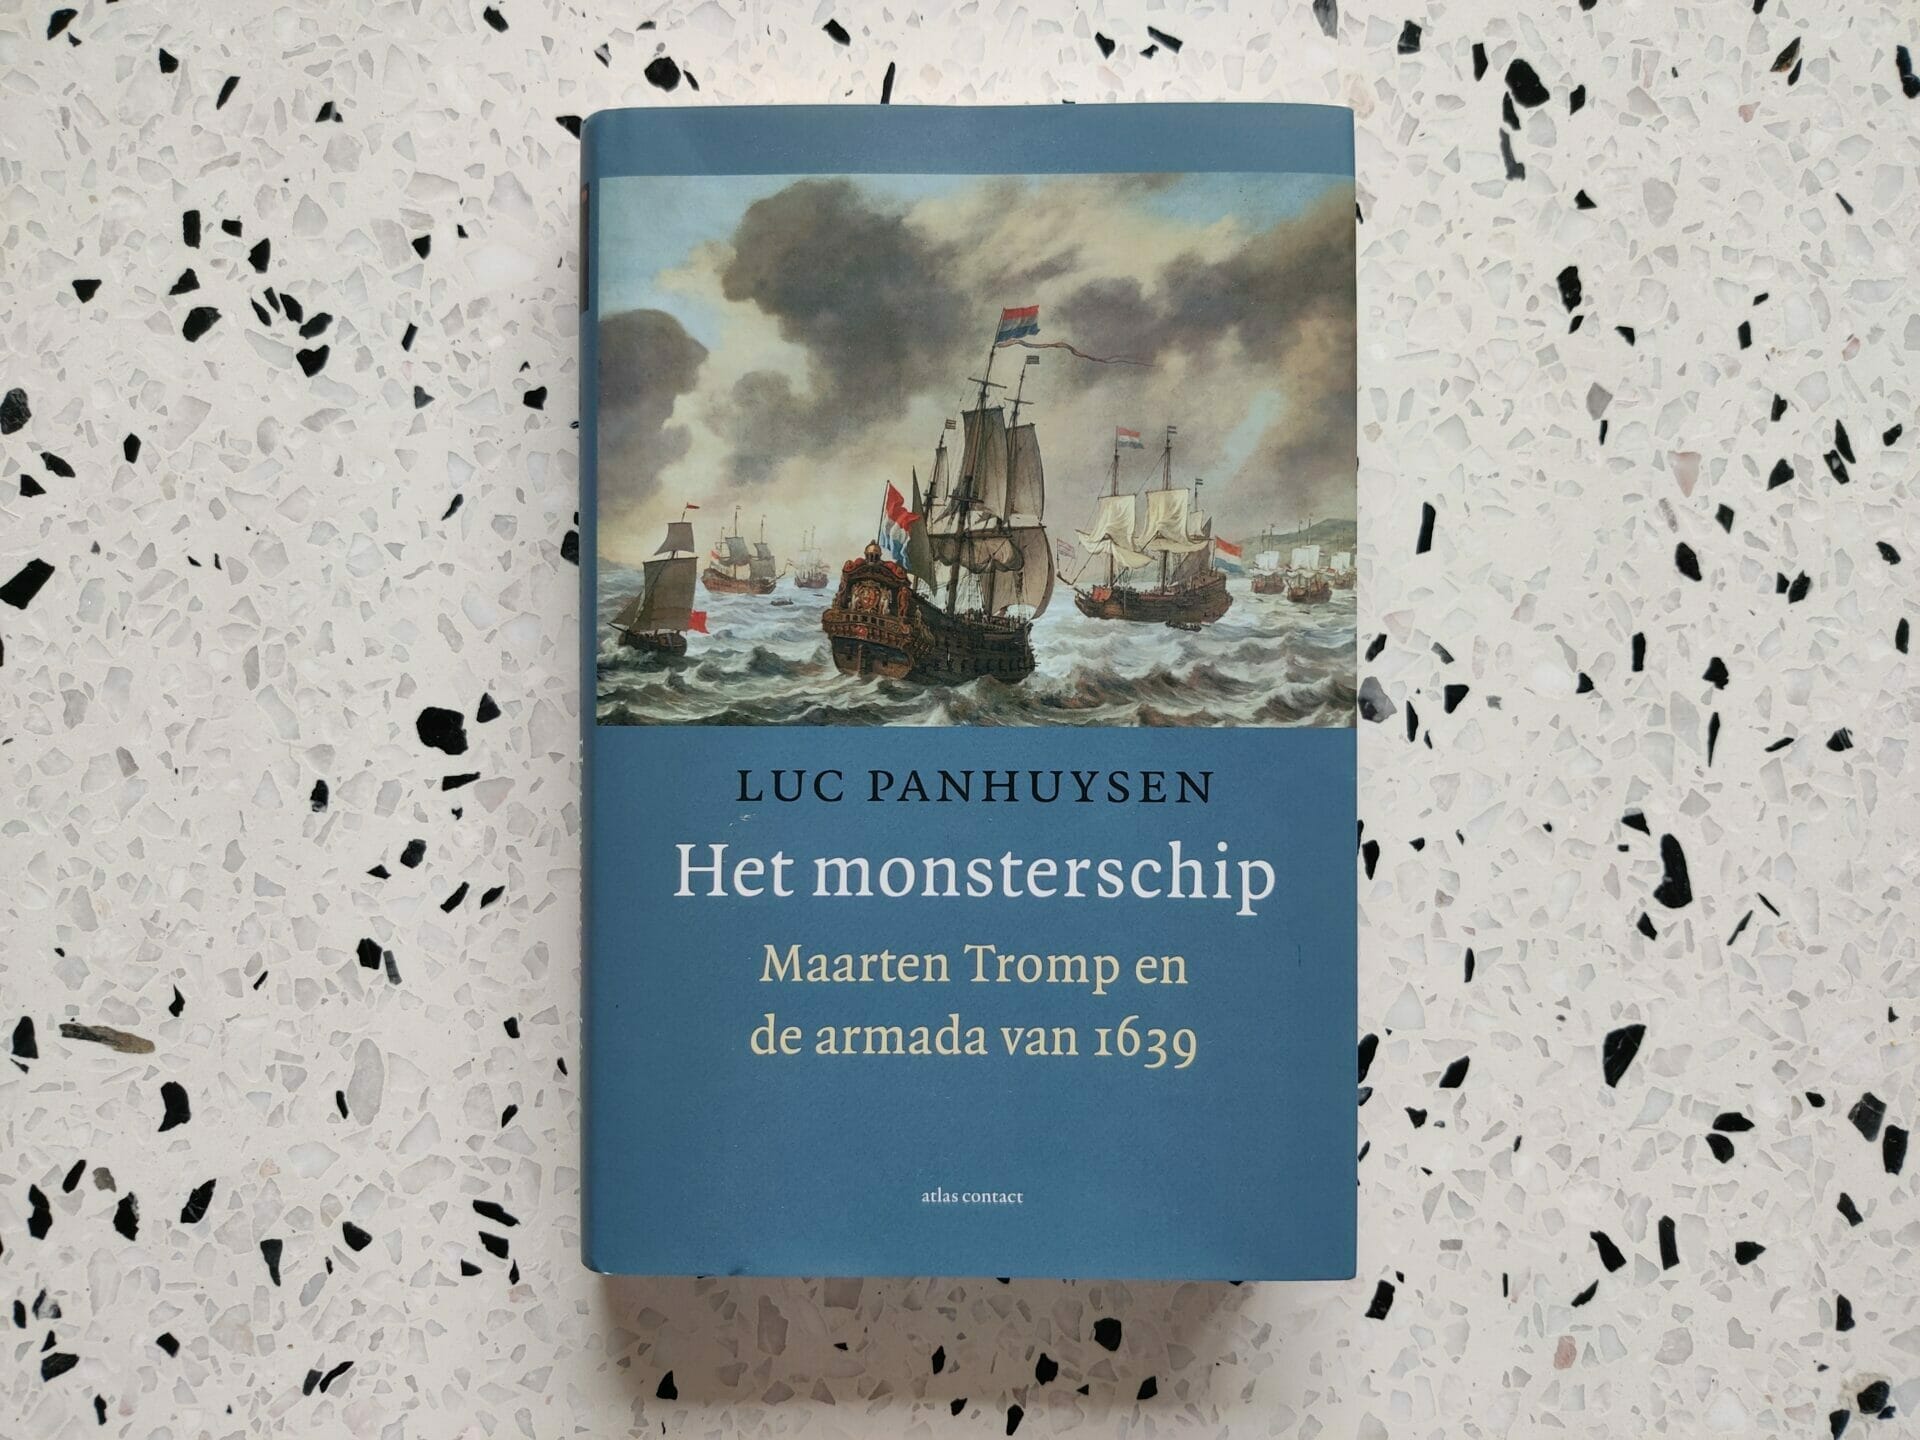 Luc Panhuysen - Het monsterschip